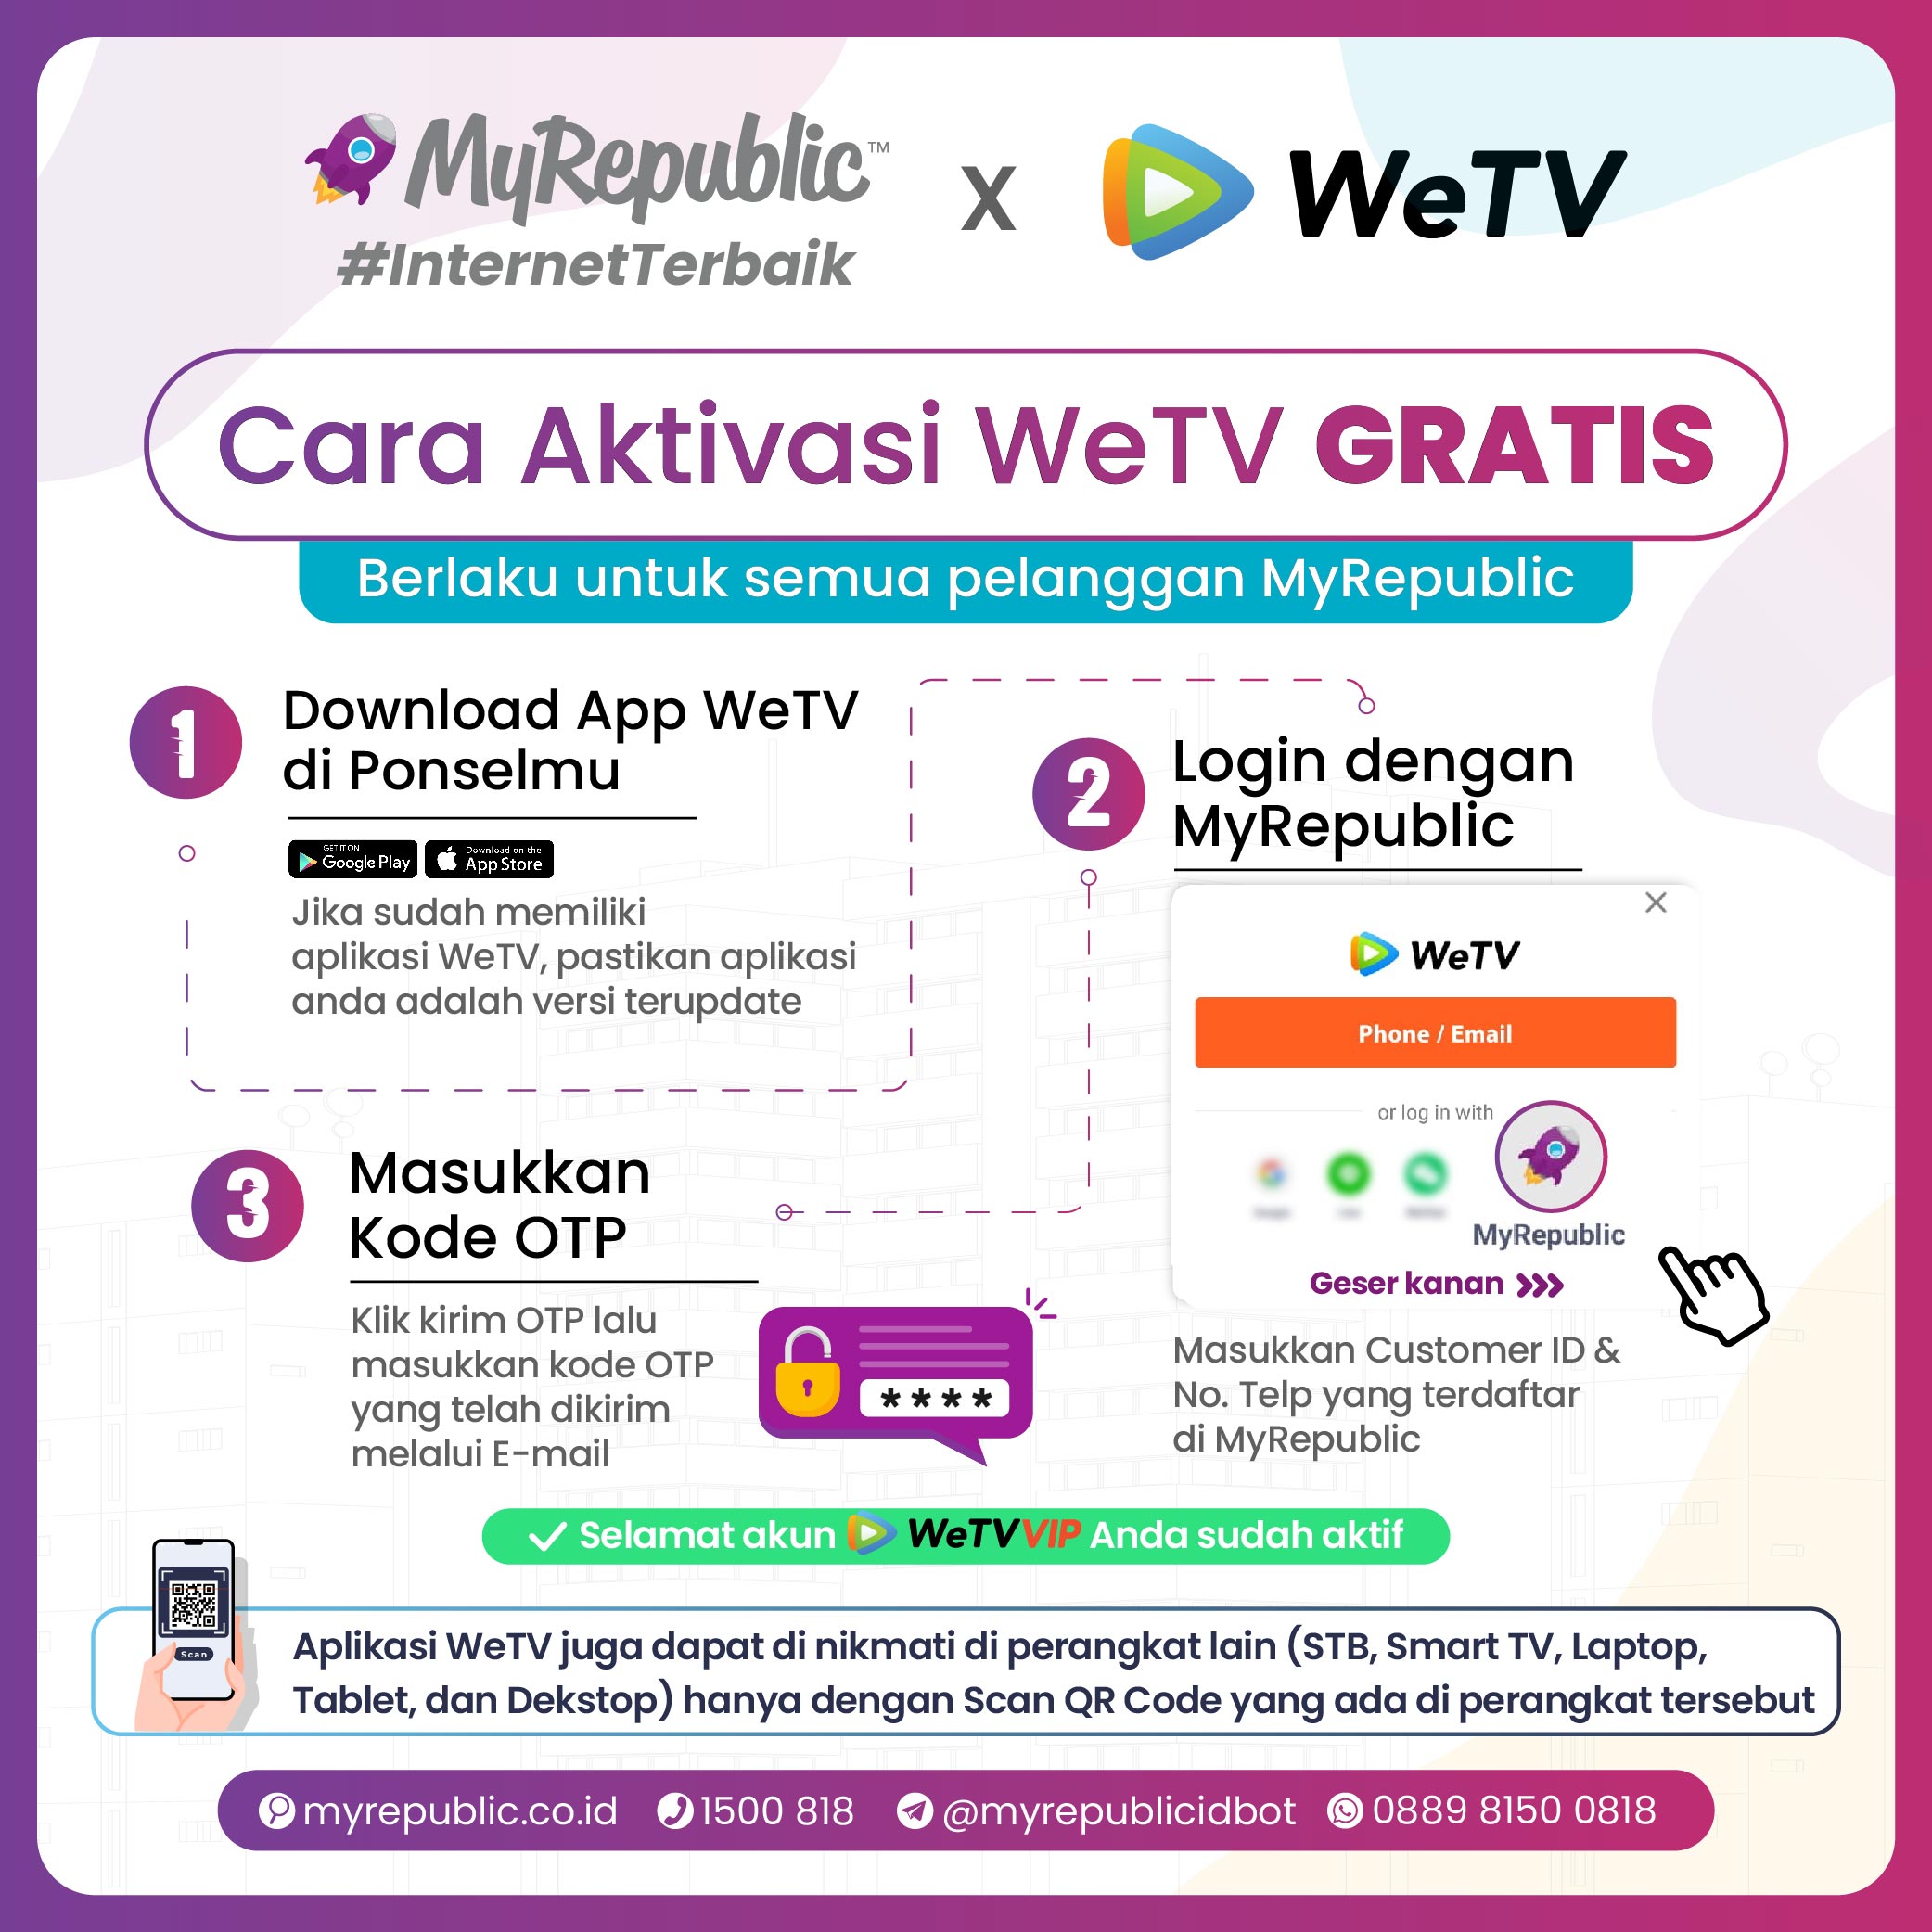 Nikmati WeTV VIP GRATIS untuk pelanggan setia dan pelanggan baru MyRepublic.